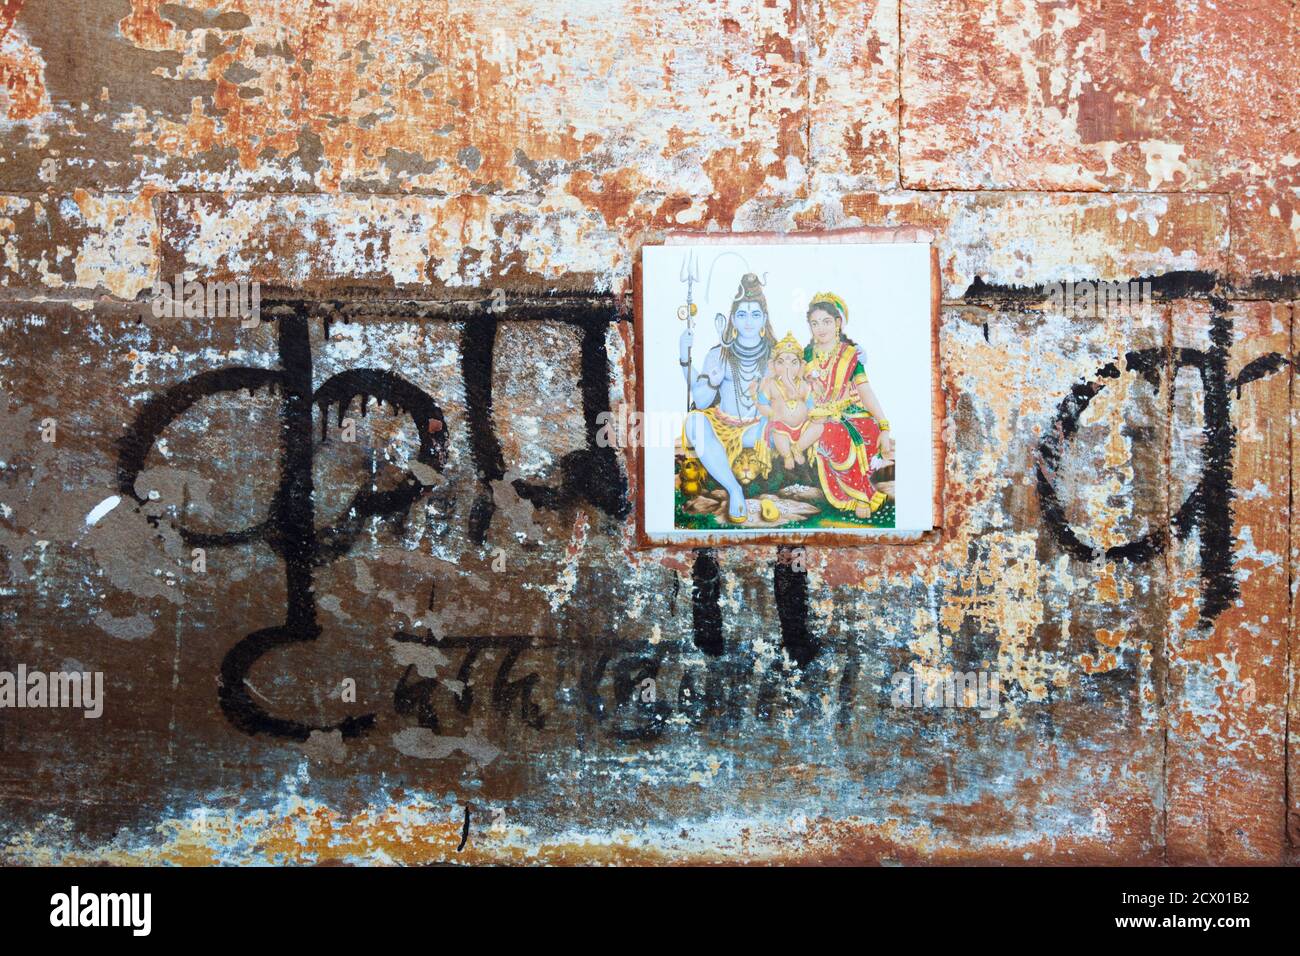 Varanasi, Uttar Pradesh, Indien : Nahaufnahme einer verwitterten Wand mit Devanagari-Schrift und einer Fliese, die die Götter Shiva, Parvati und Ganesh darstellt. Stockfoto